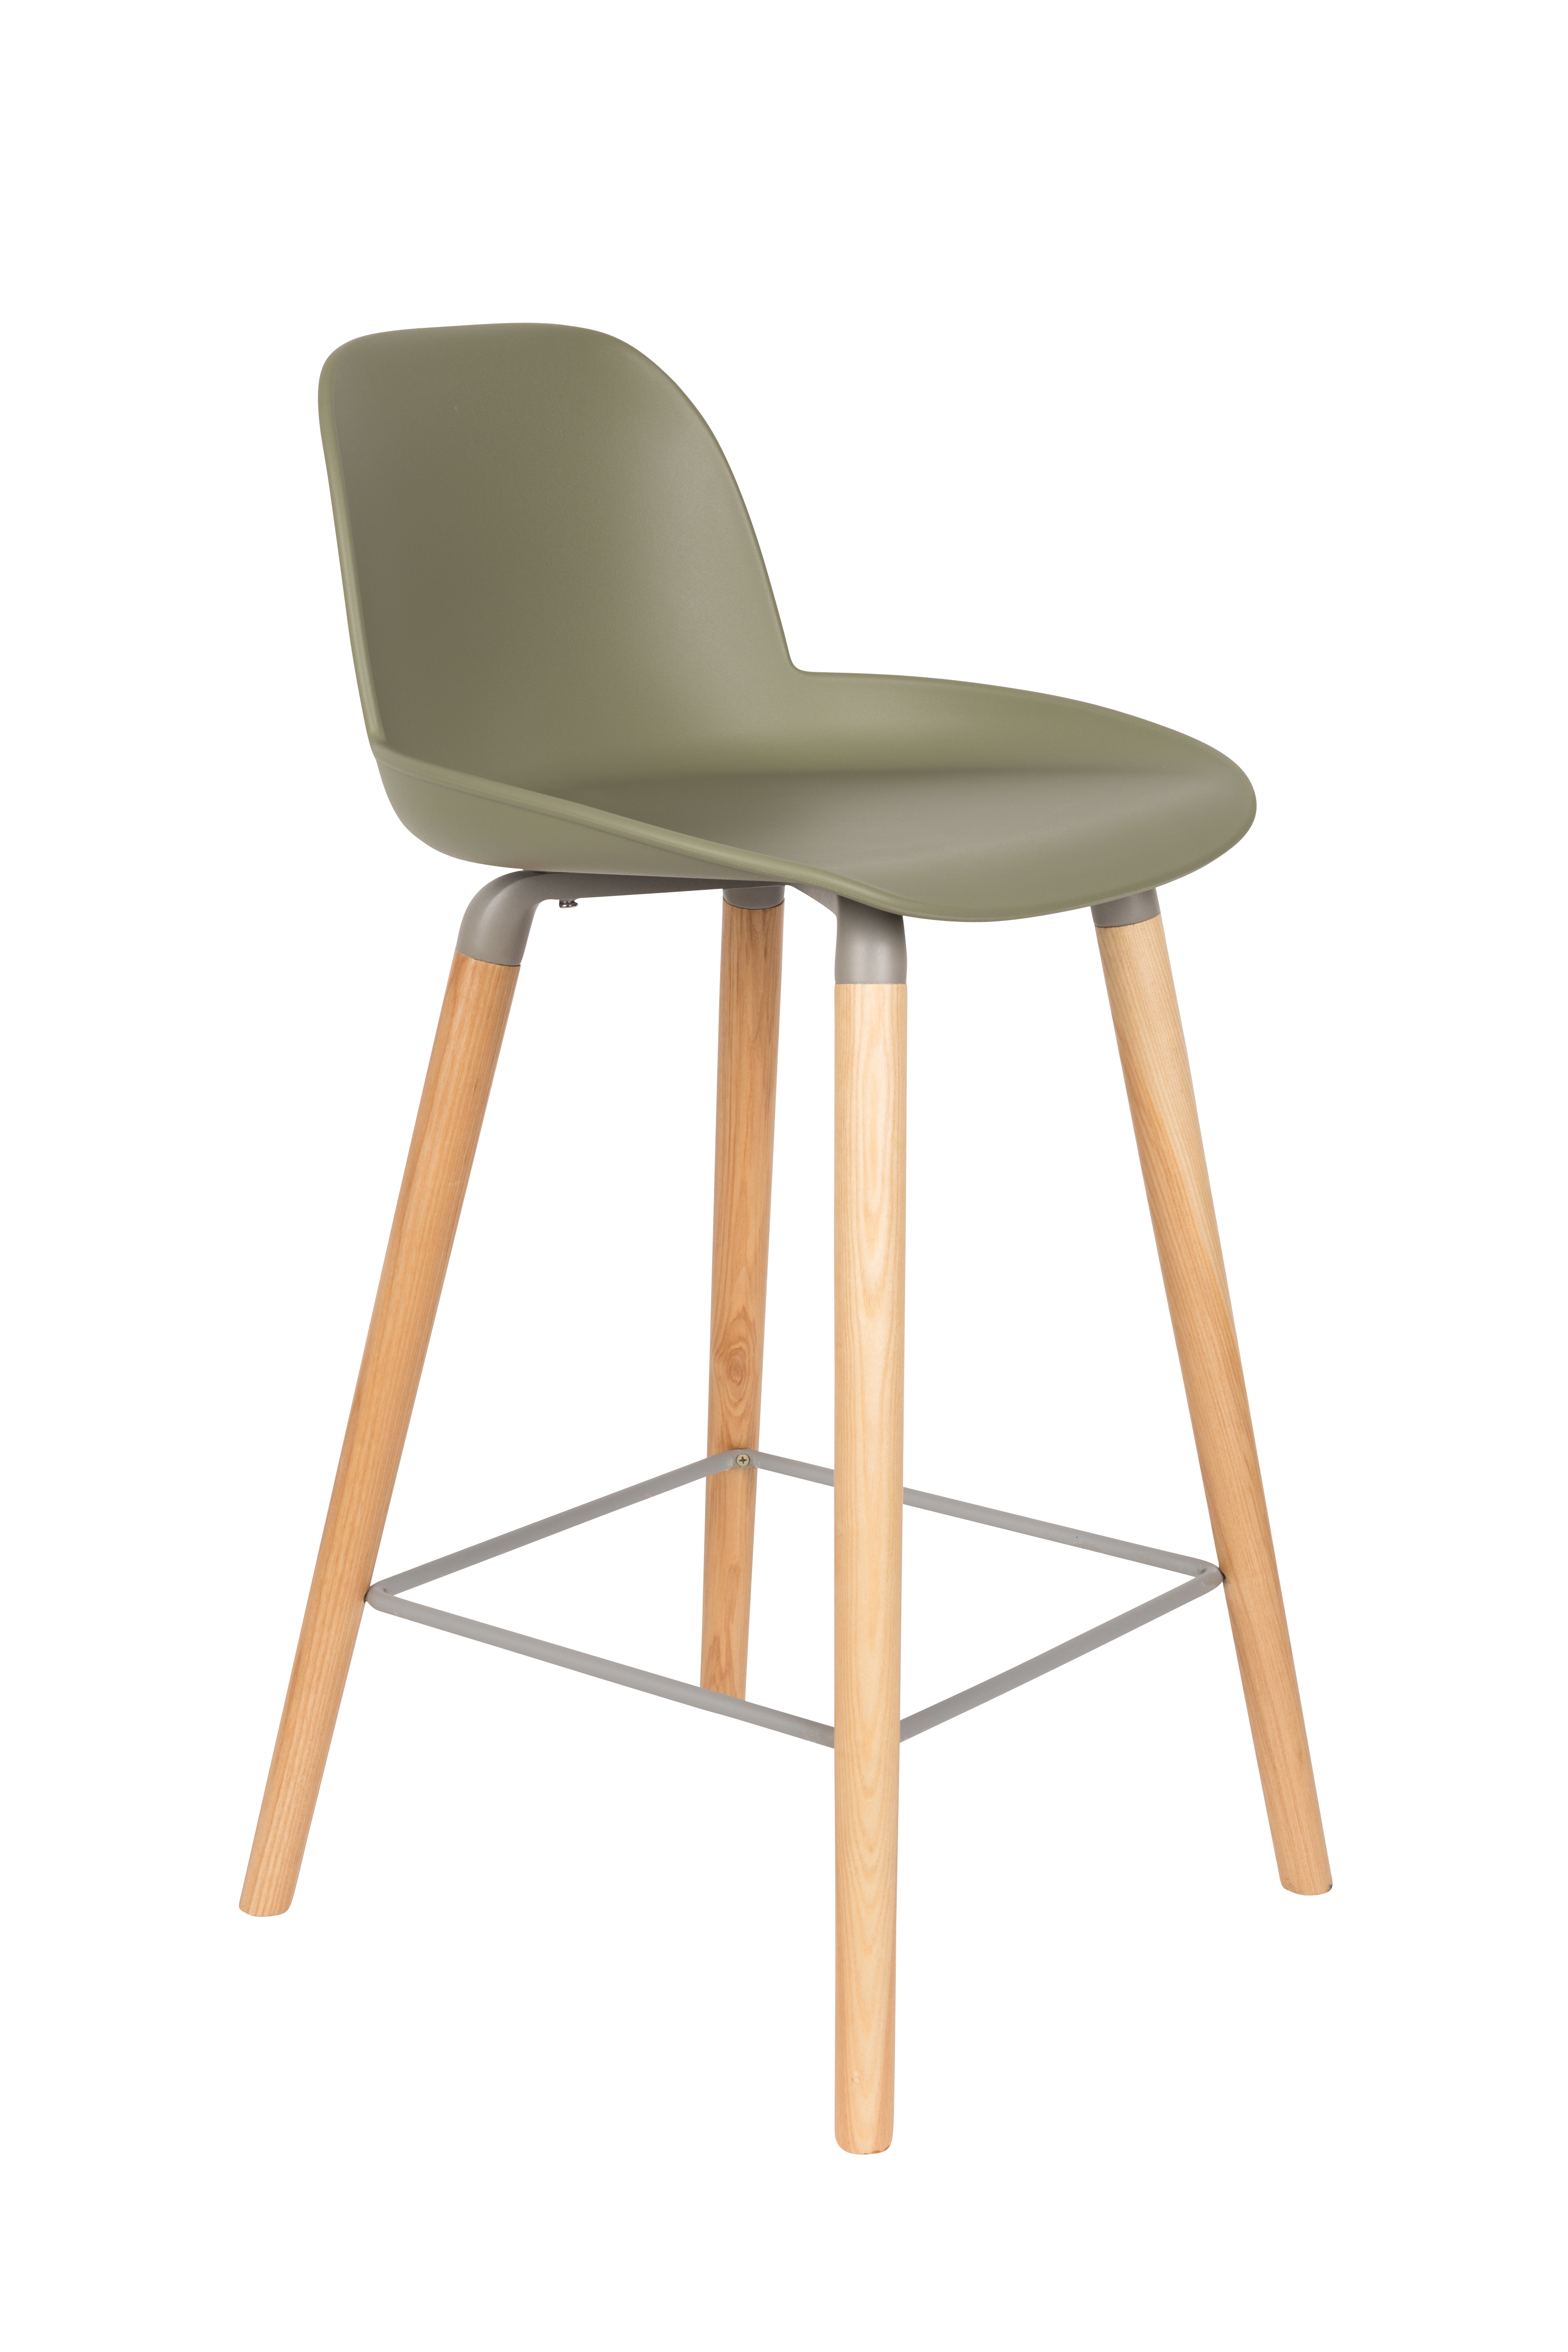 ZUIVER Albert Kuip barstol, m. ryglæn og fodstøtte – grøn polypropylen/natur asketræ (65cm)